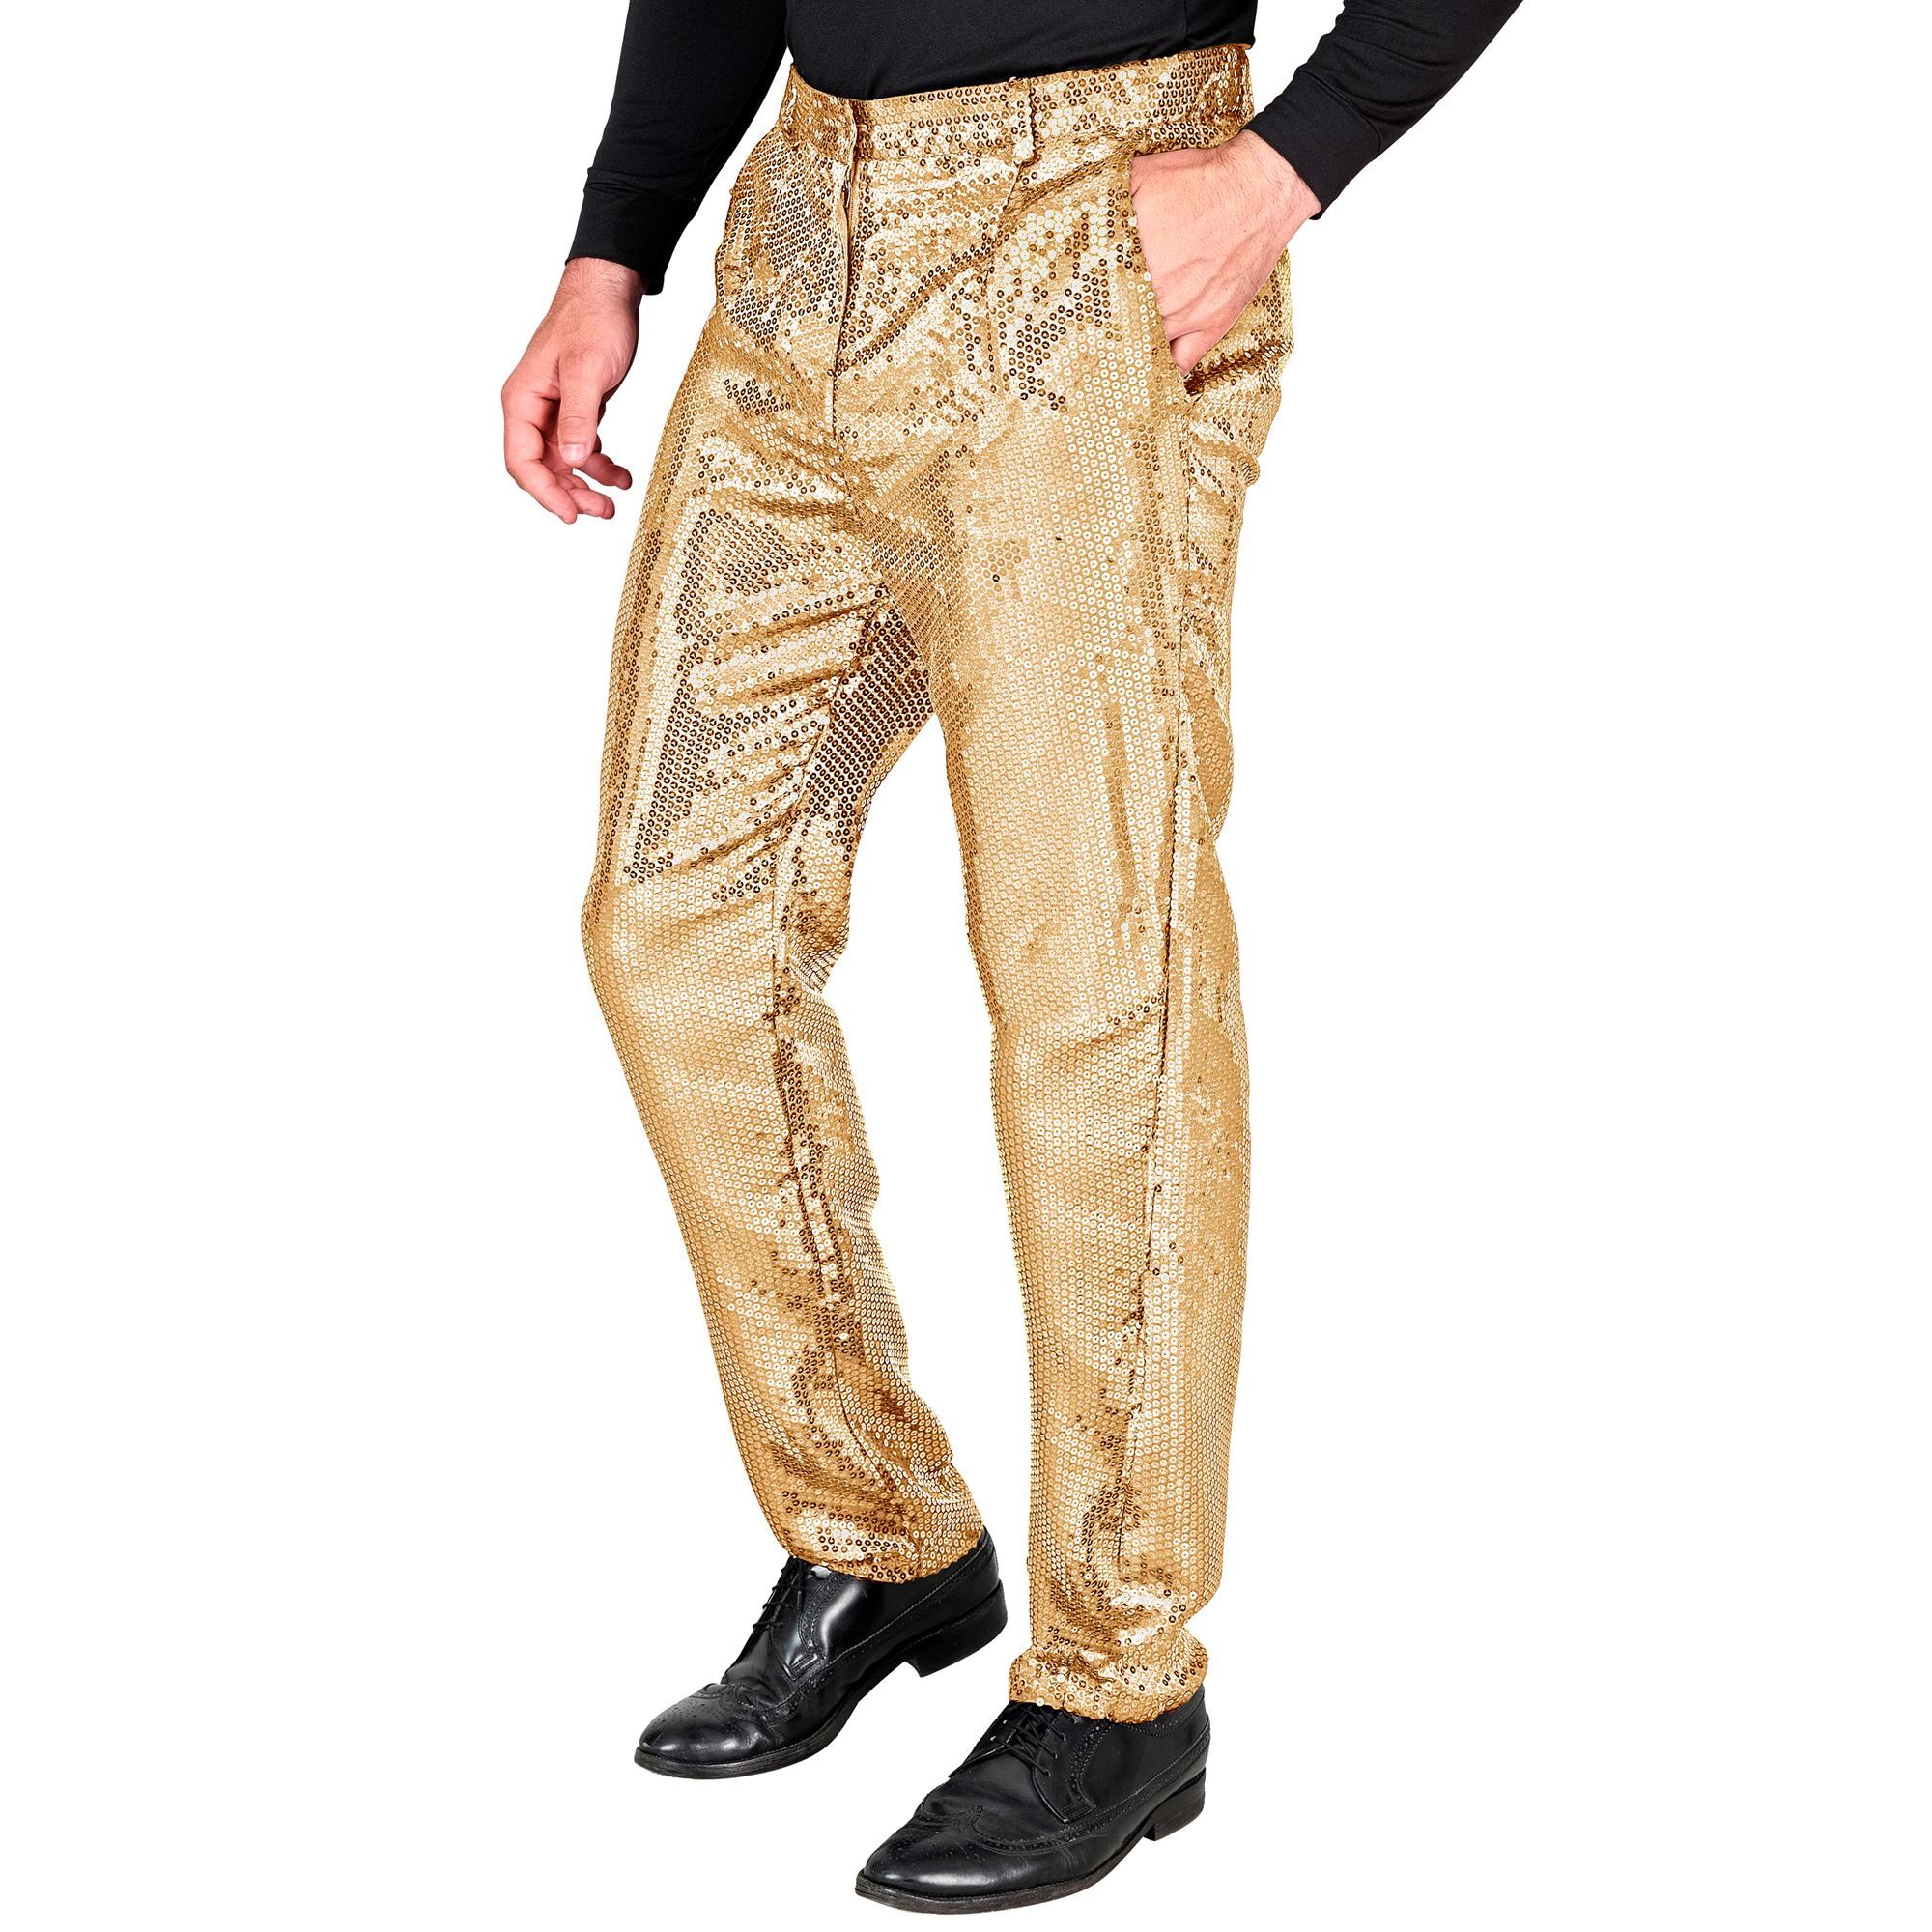 glinster en glim met onze gouden heren pailletten broek jouw toverformule voor glitter en glamour op disco's en foute parties!